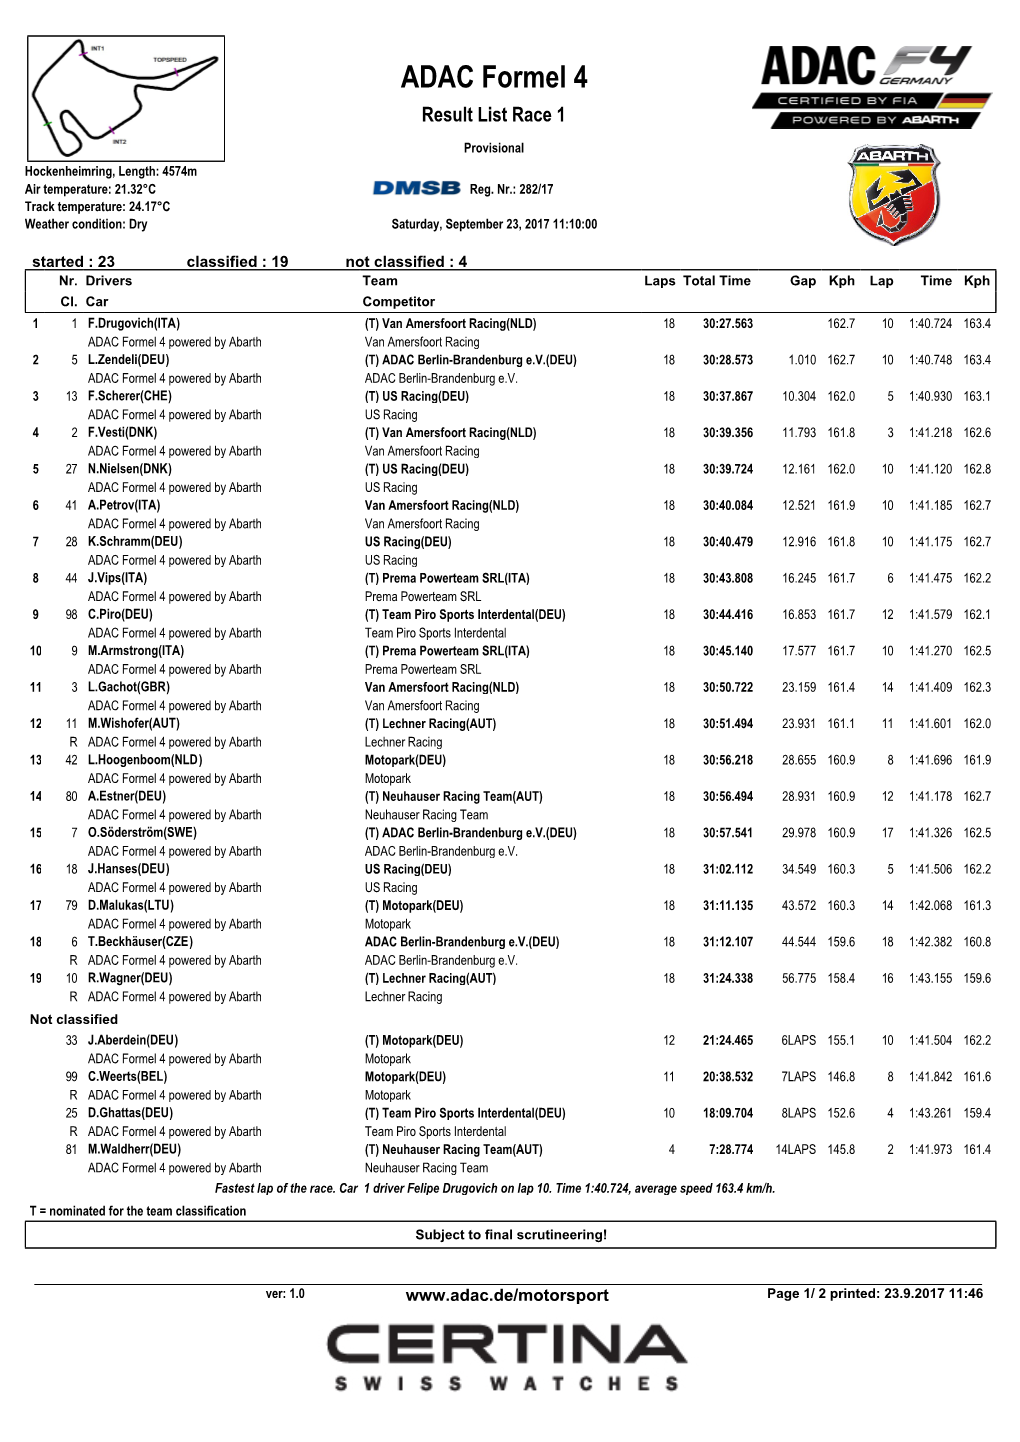 ADAC Formel 4 Result List Race 1